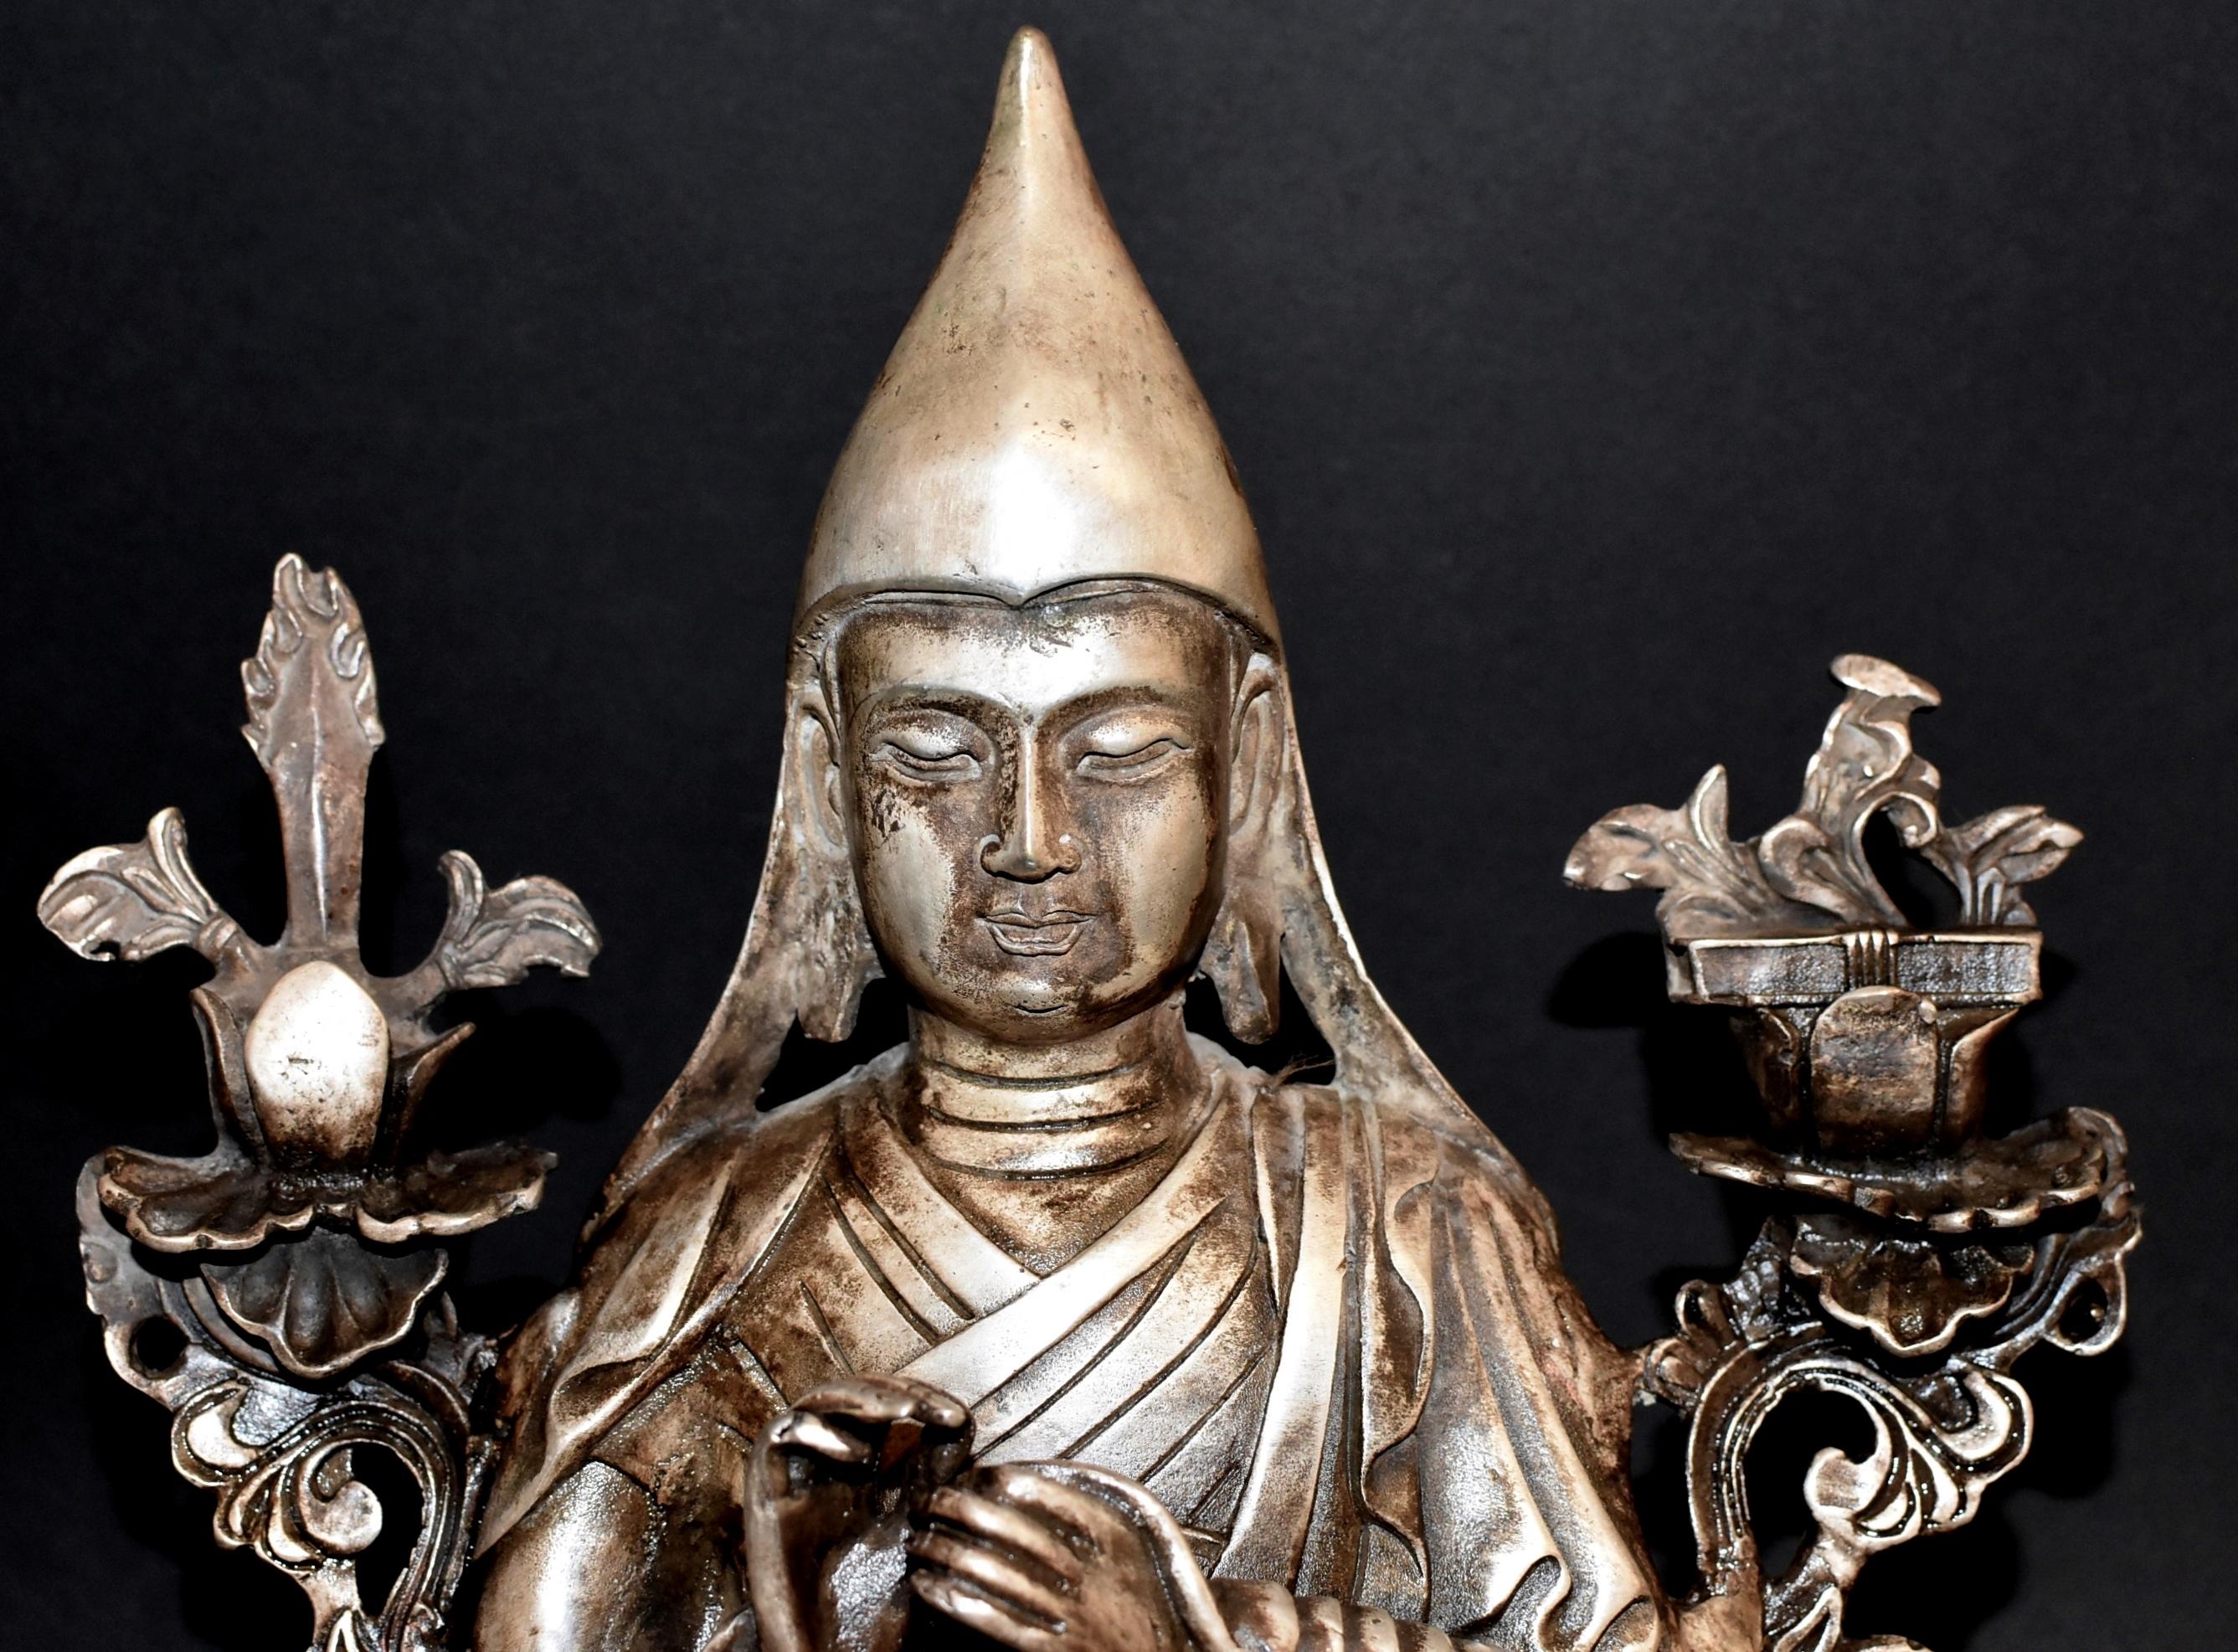 Eine feine Silberbronze-Statue des tibetischen Lehrers Tsongkhapa. Je Tshongkhapa ist der Lehrer des tibetischen Buddhismus, dessen Wirken die Gelug-Schule des tibetischen Buddhismus begründet hat. Man glaubt, dass er die Reinkarnation des Gottes